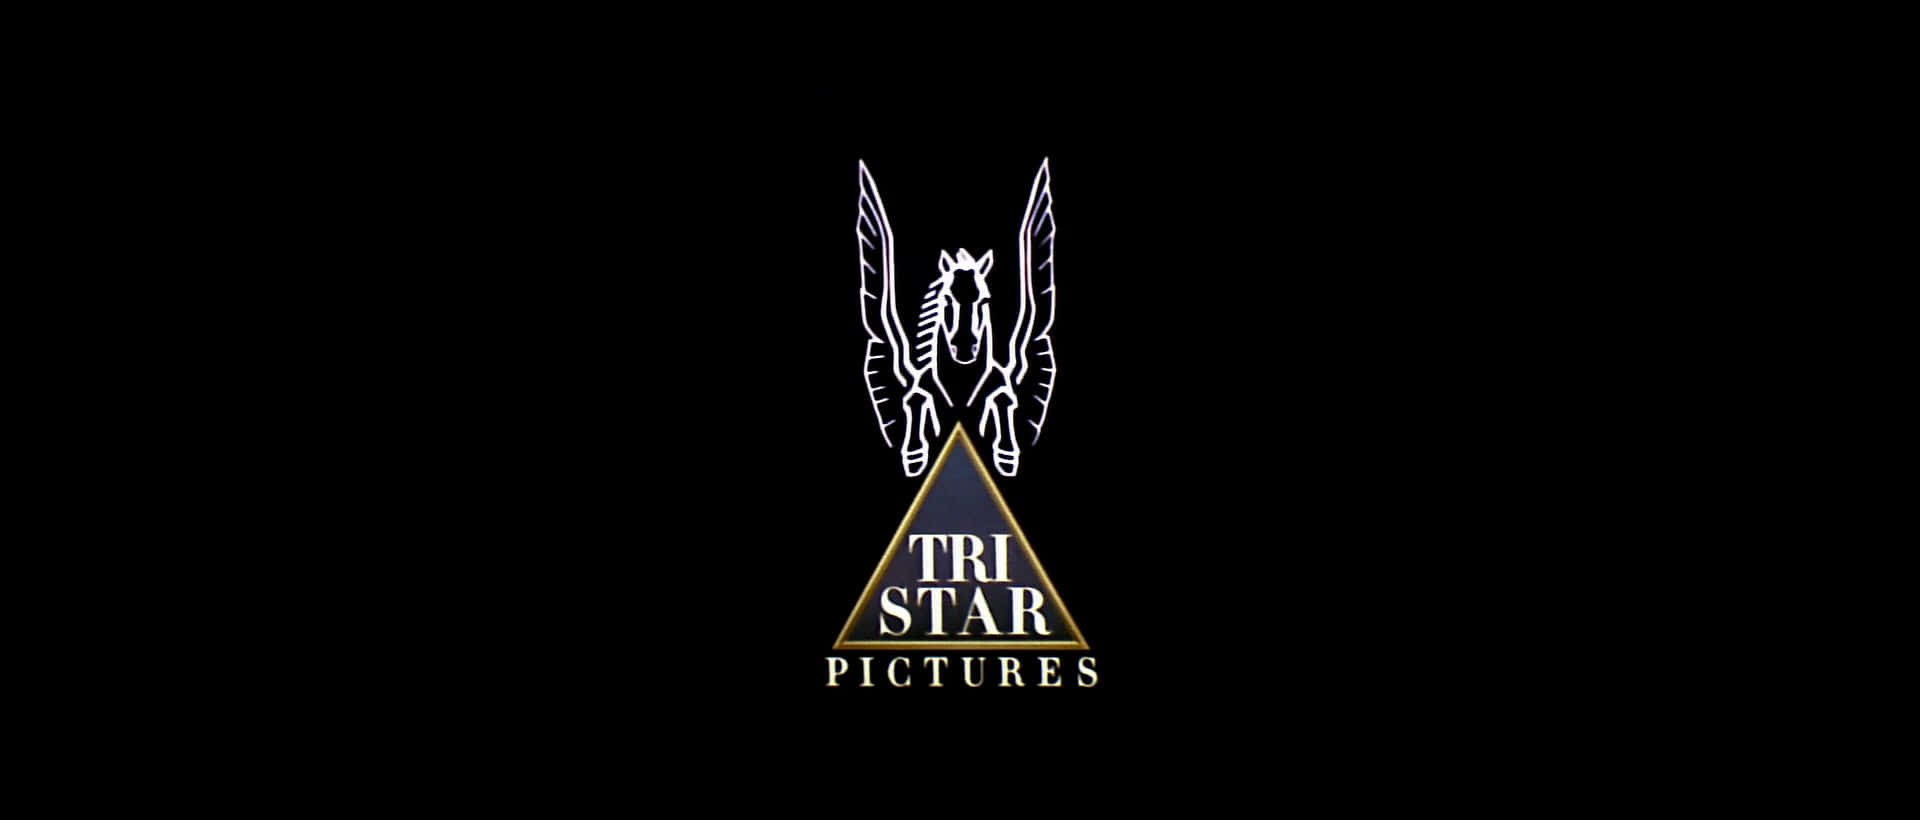 Et logo for Tri Star Pictures blomstrer over hele overfladen.